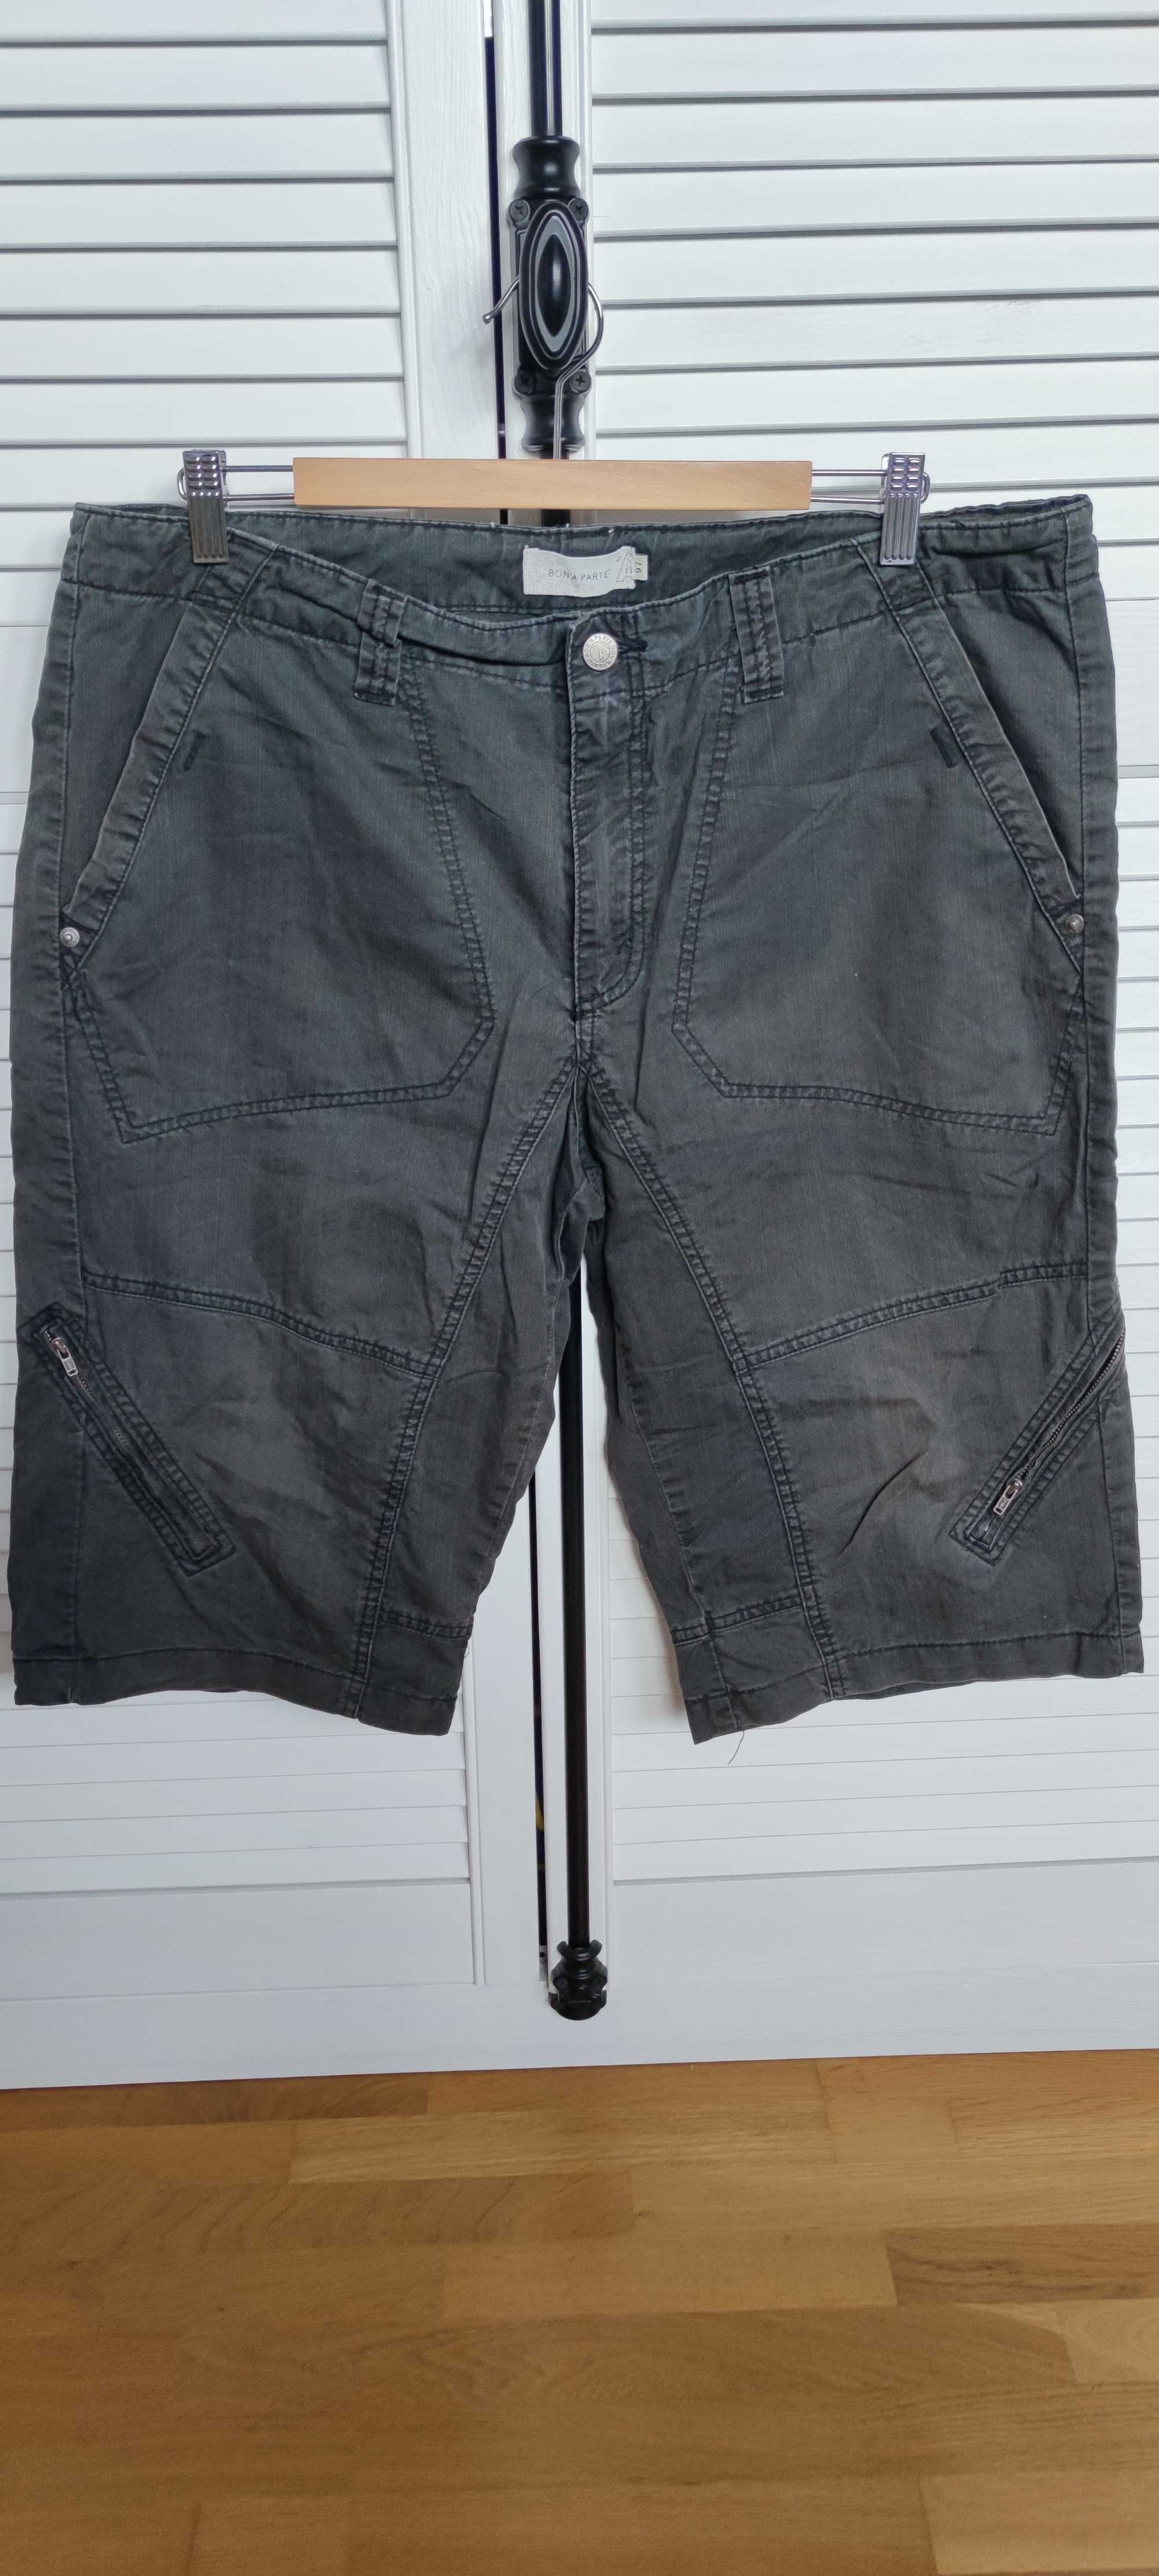 Spodnie męskie krótkie - Bon'a Parte r. XL (97 cm/pas) - bawełna